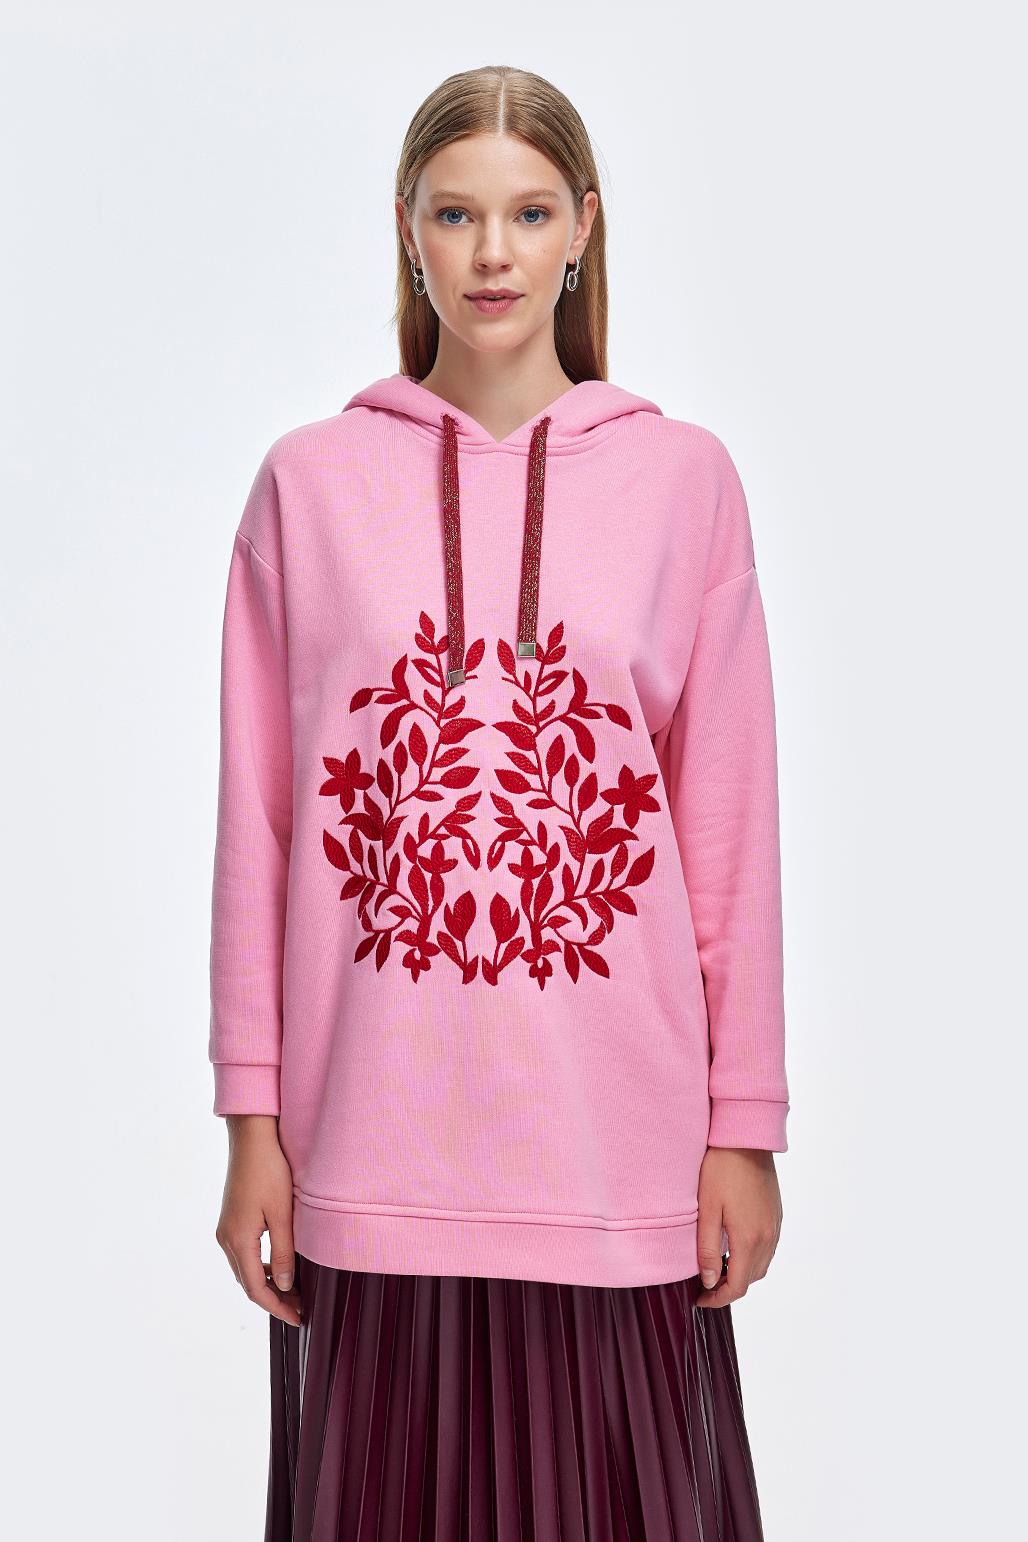 A wholesale clothing model wears Hooded Embroidered Sweat - Pink, Turkish wholesale Hoodie of Kadriye Baştürk